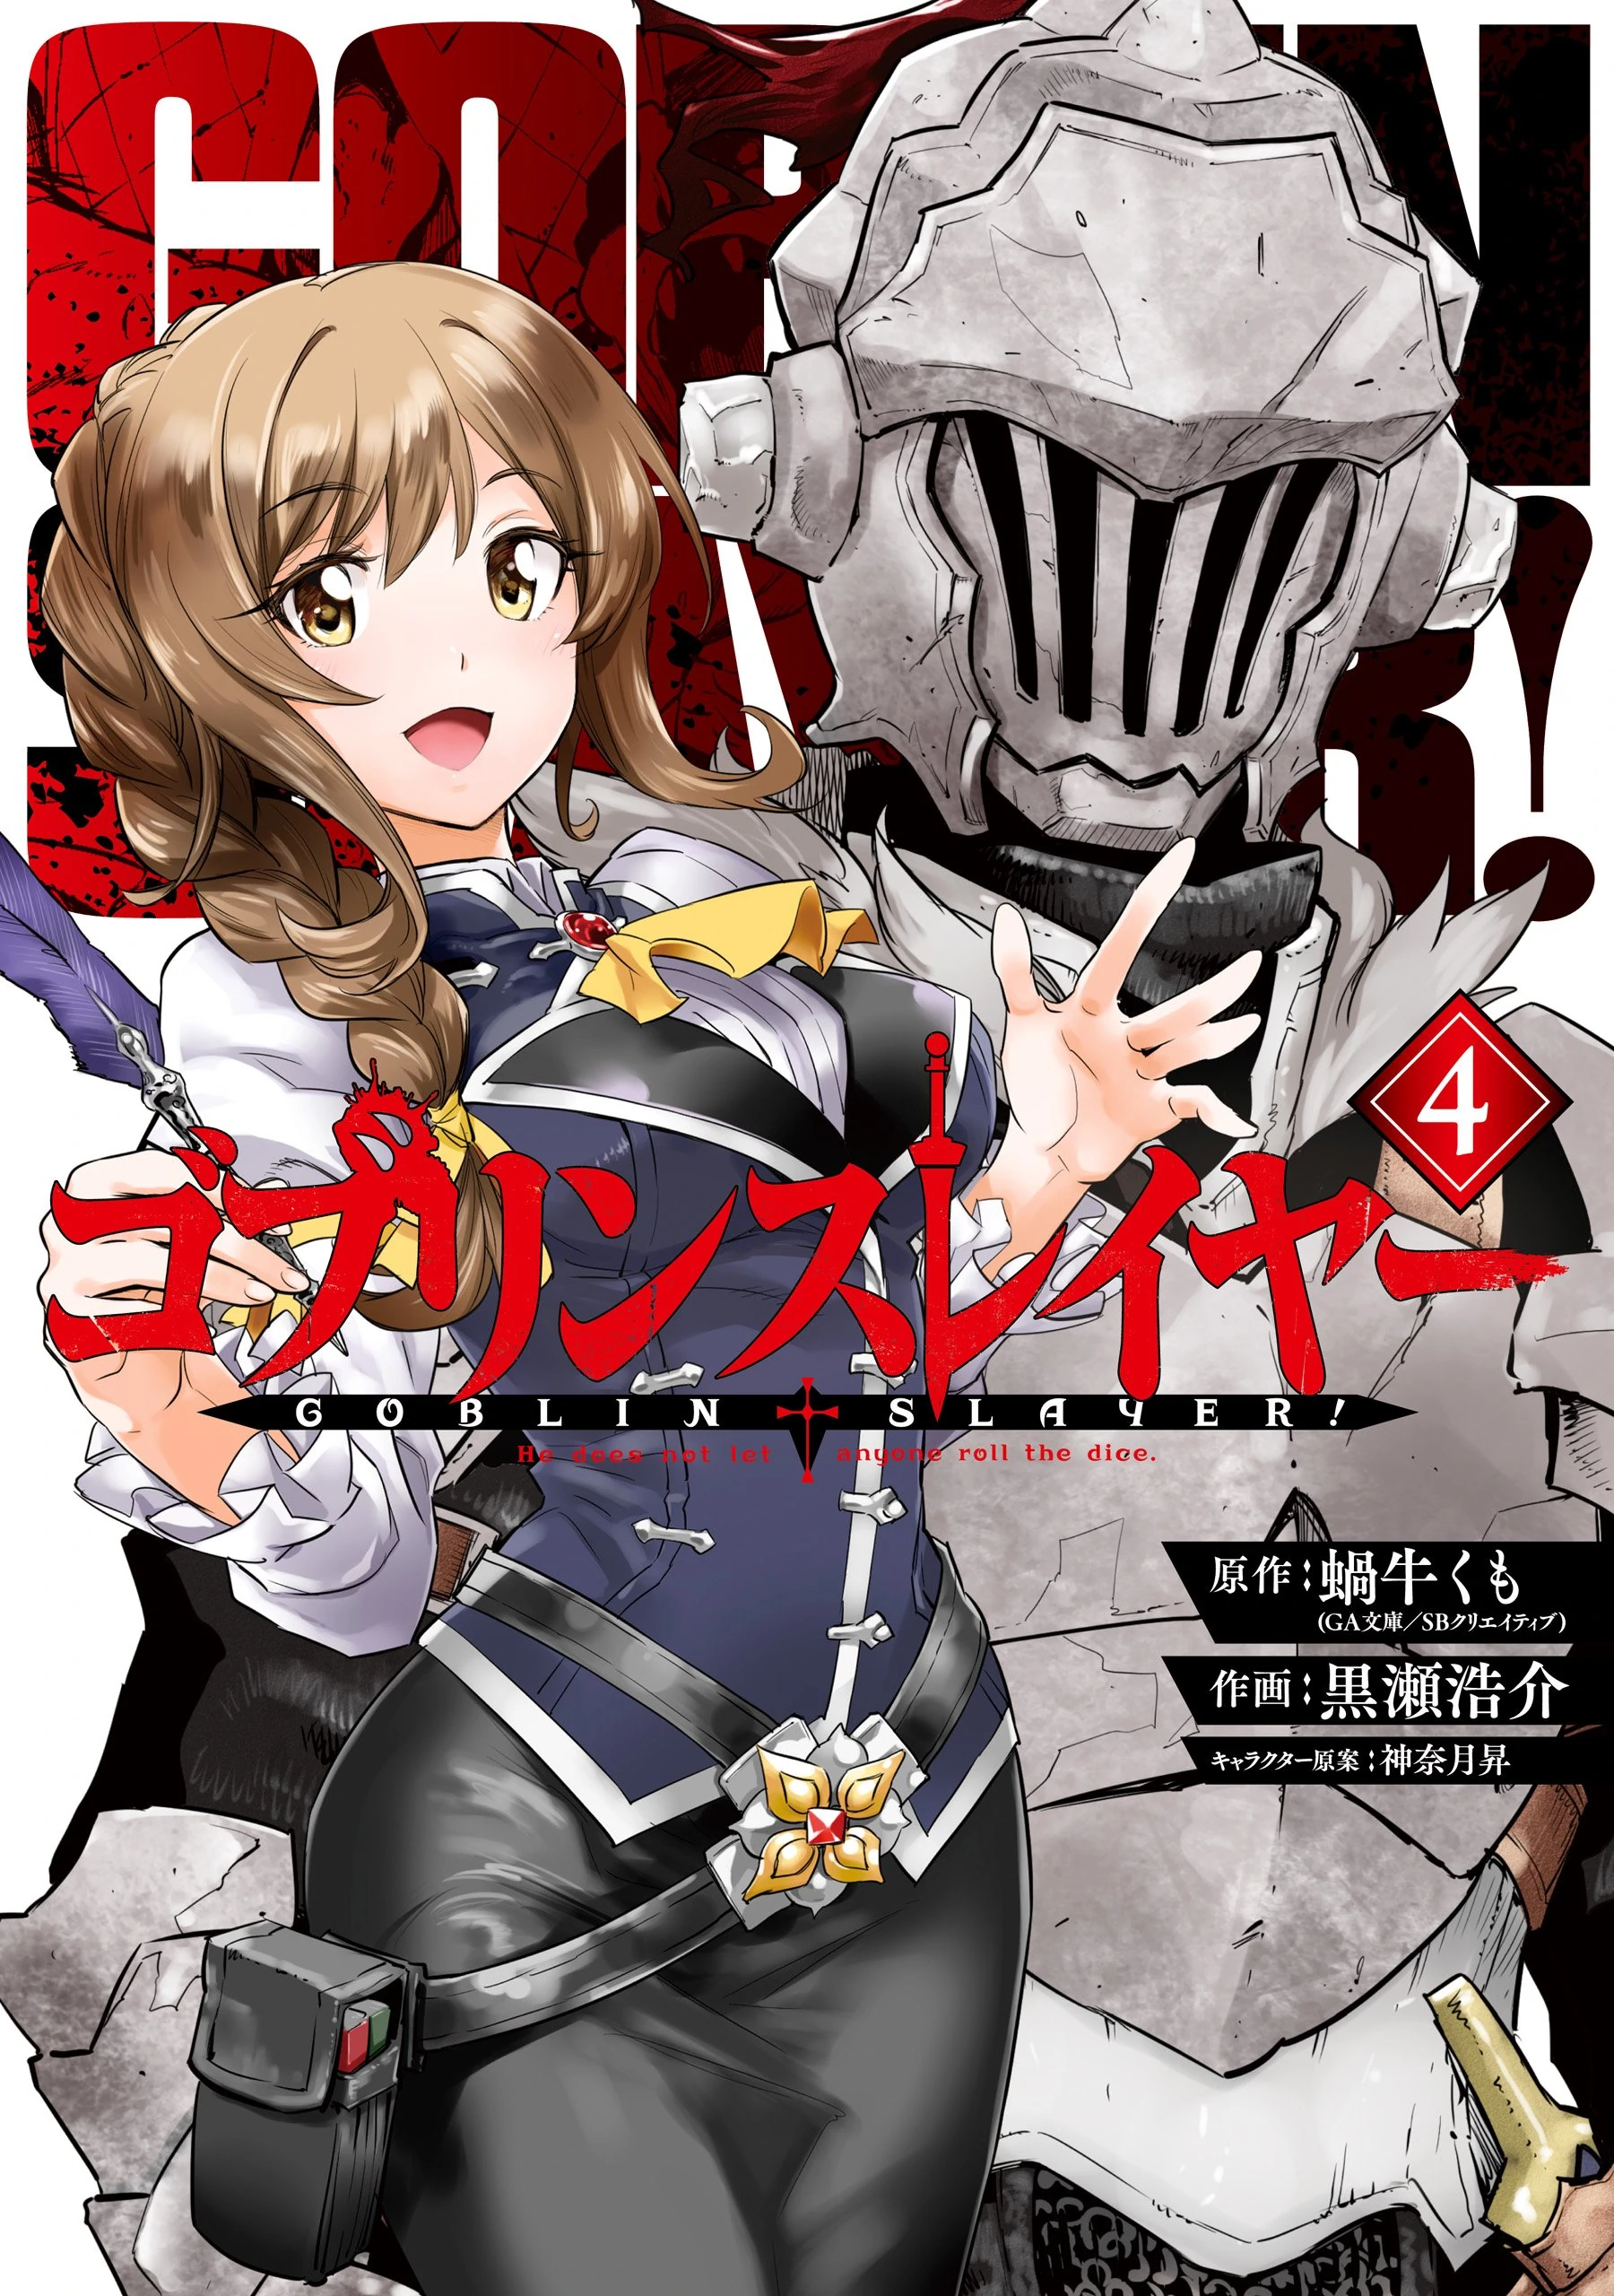 Year One Manga Chapter 10, Goblin Slayer Wiki